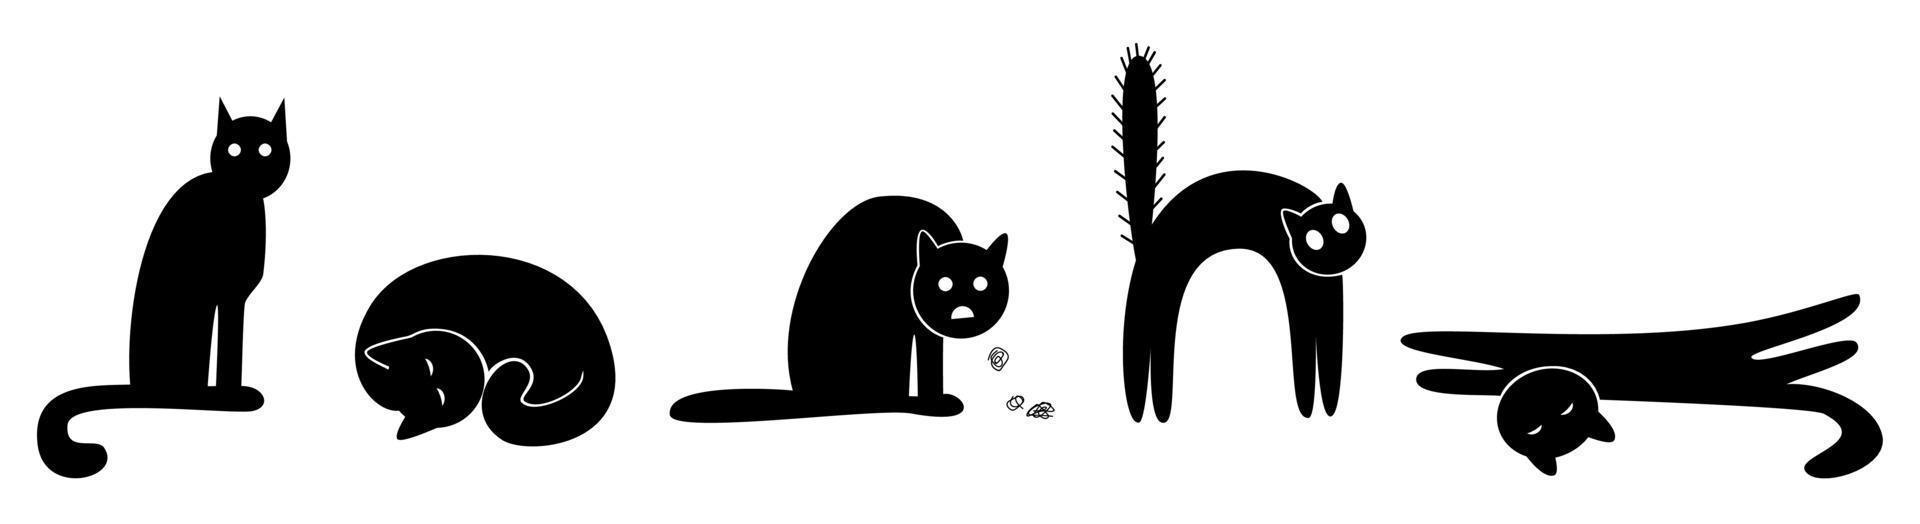 fünf schwarze katzen in verschiedenen positionen - sitzend, schlafend, hustend, verängstigt, streckend. Vektor-Illustration isoliert auf weißem Hintergrund. vektor